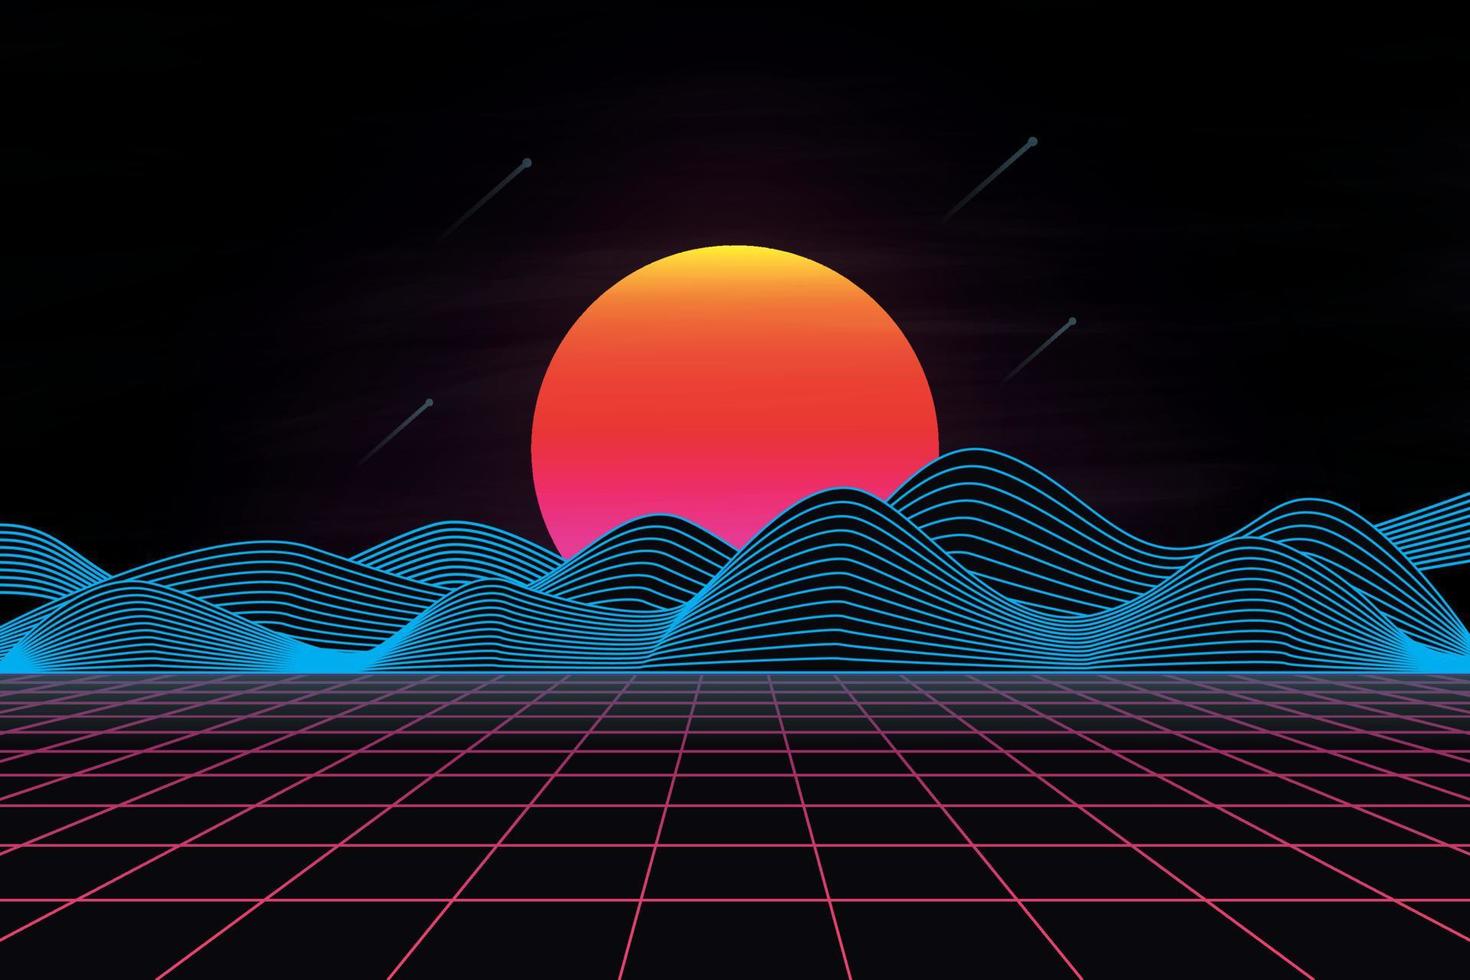 paisagem retrô futurista dos anos 80 com sol e montanha. ilustração vetorial vetor